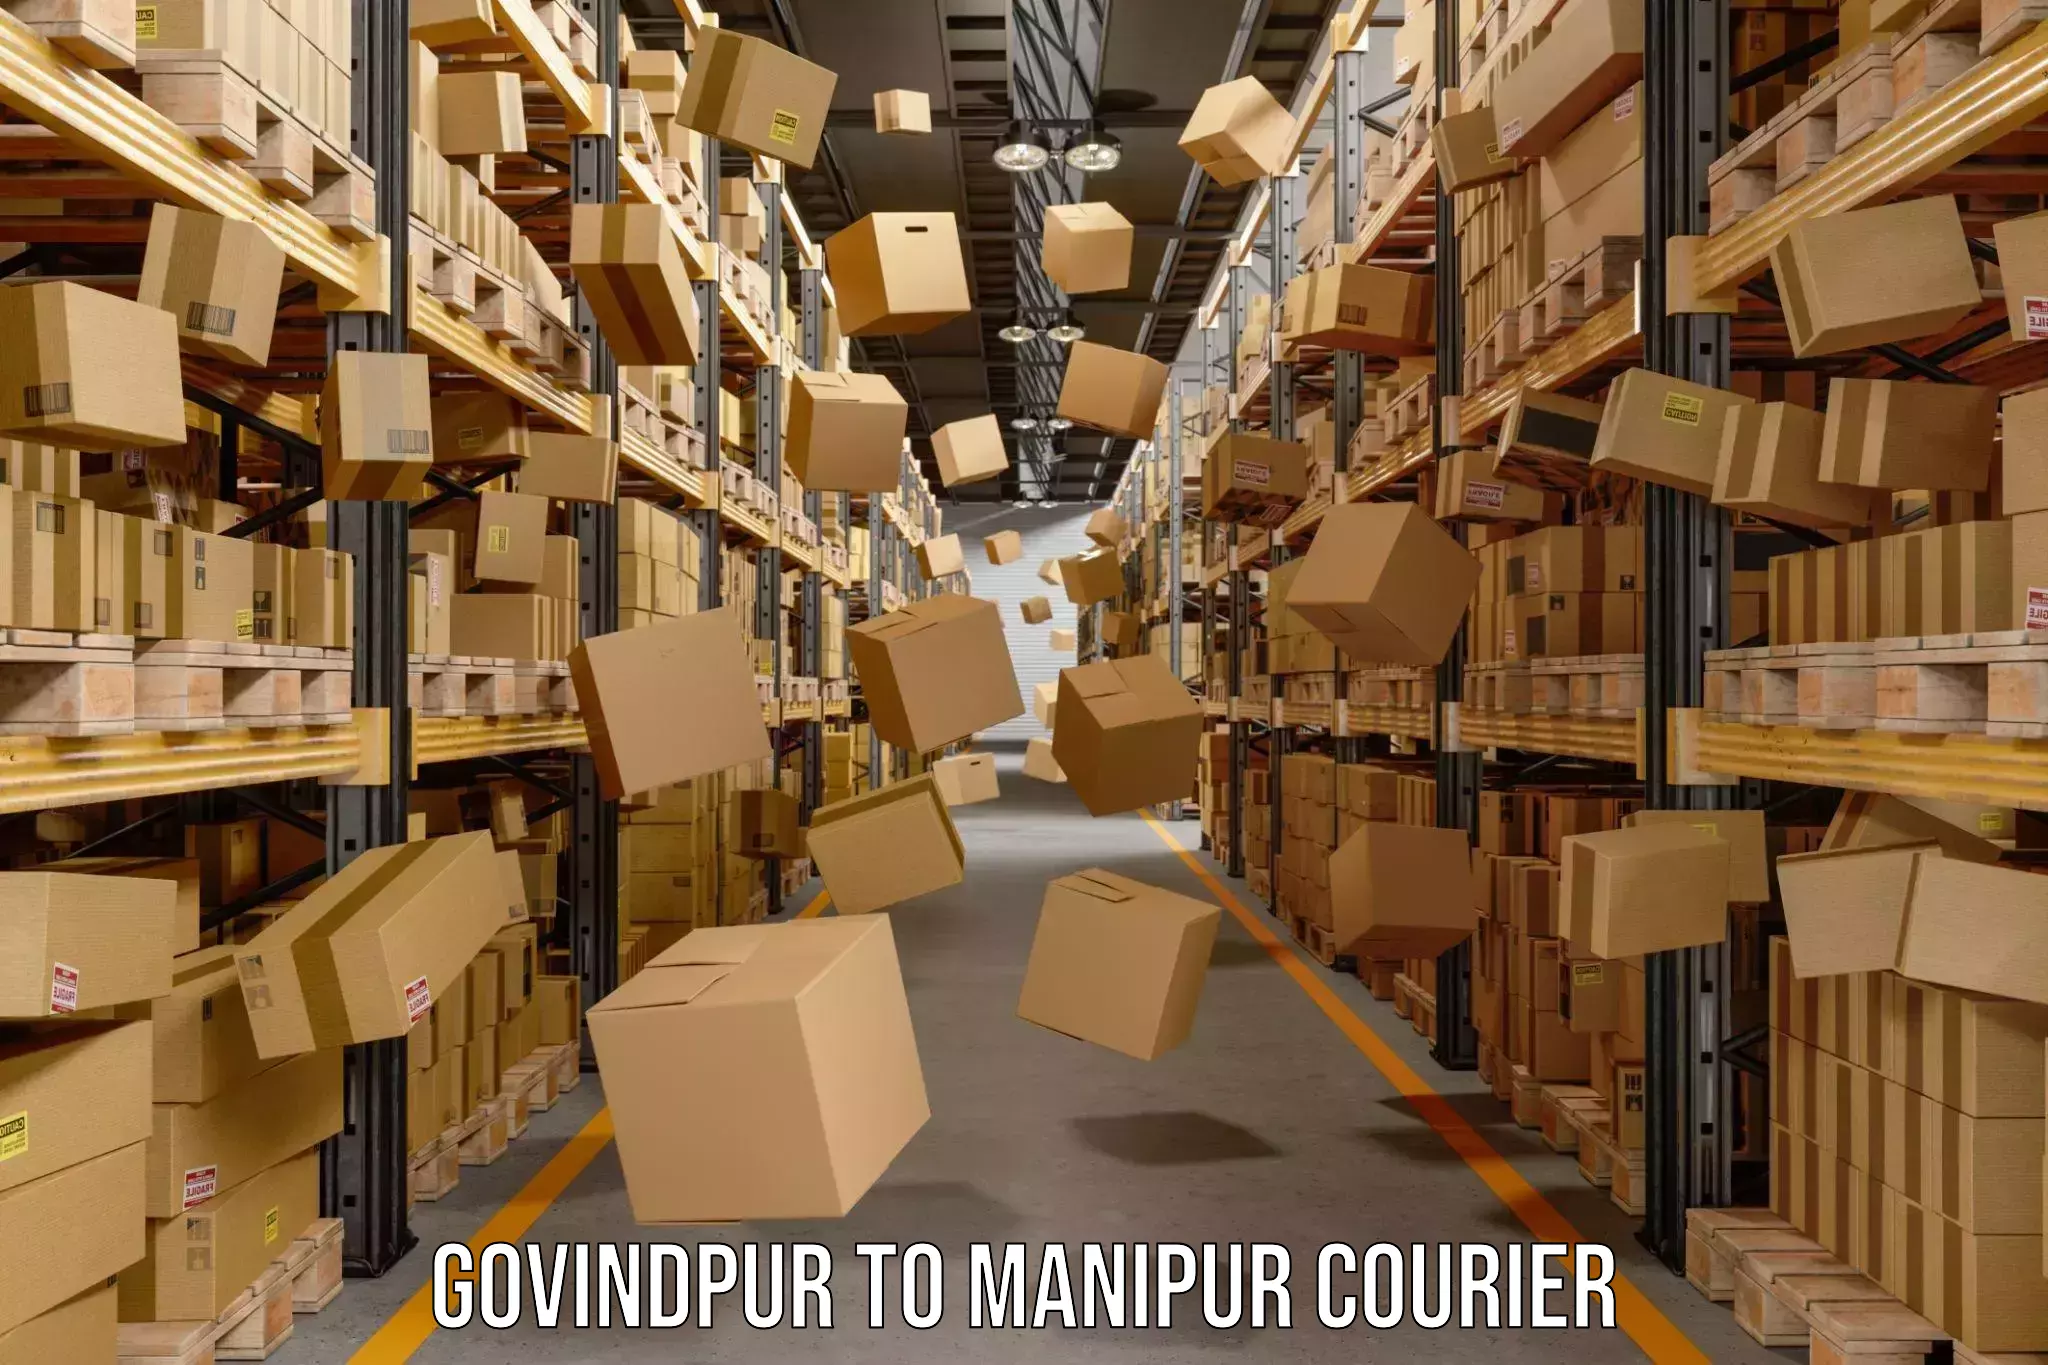 On-call courier service Govindpur to Senapati